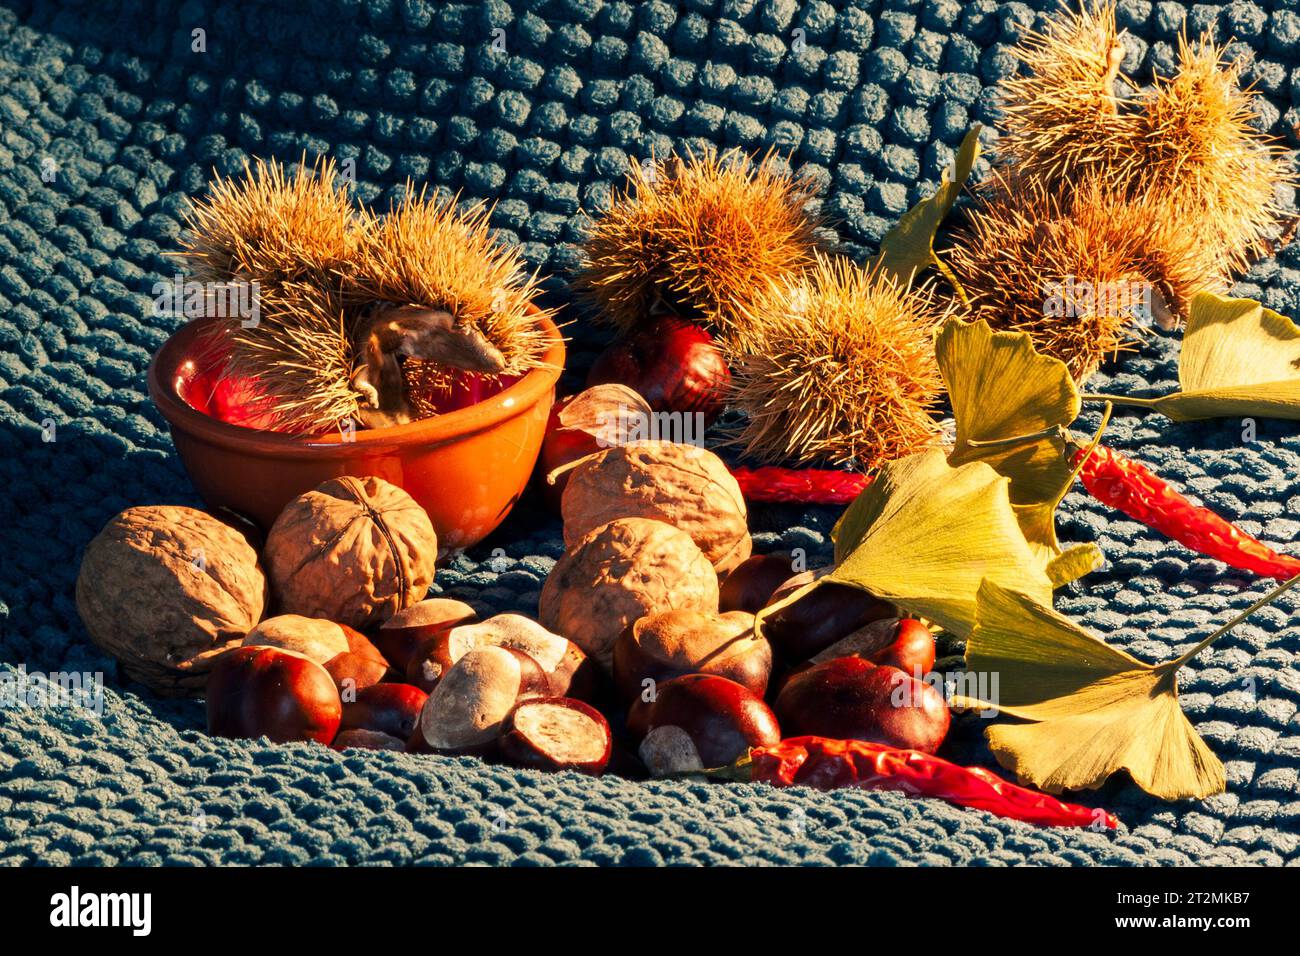 Composition de nature morte d'automne avec des feuilles jaunes, des piments rouges, des châtaignes, des noix, des châtaignes piquées et un pot orange rustique Banque D'Images